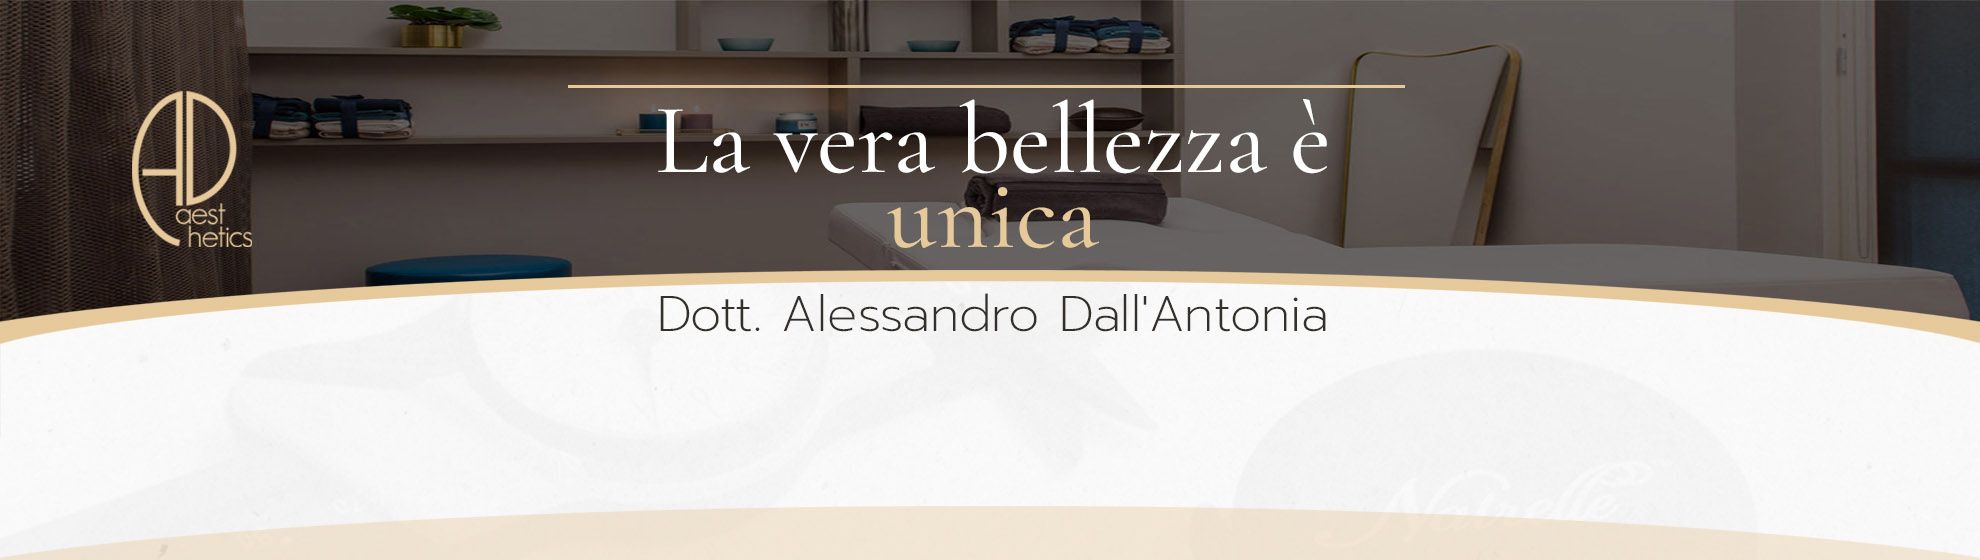 Dott. Alessandro Dall'antonia